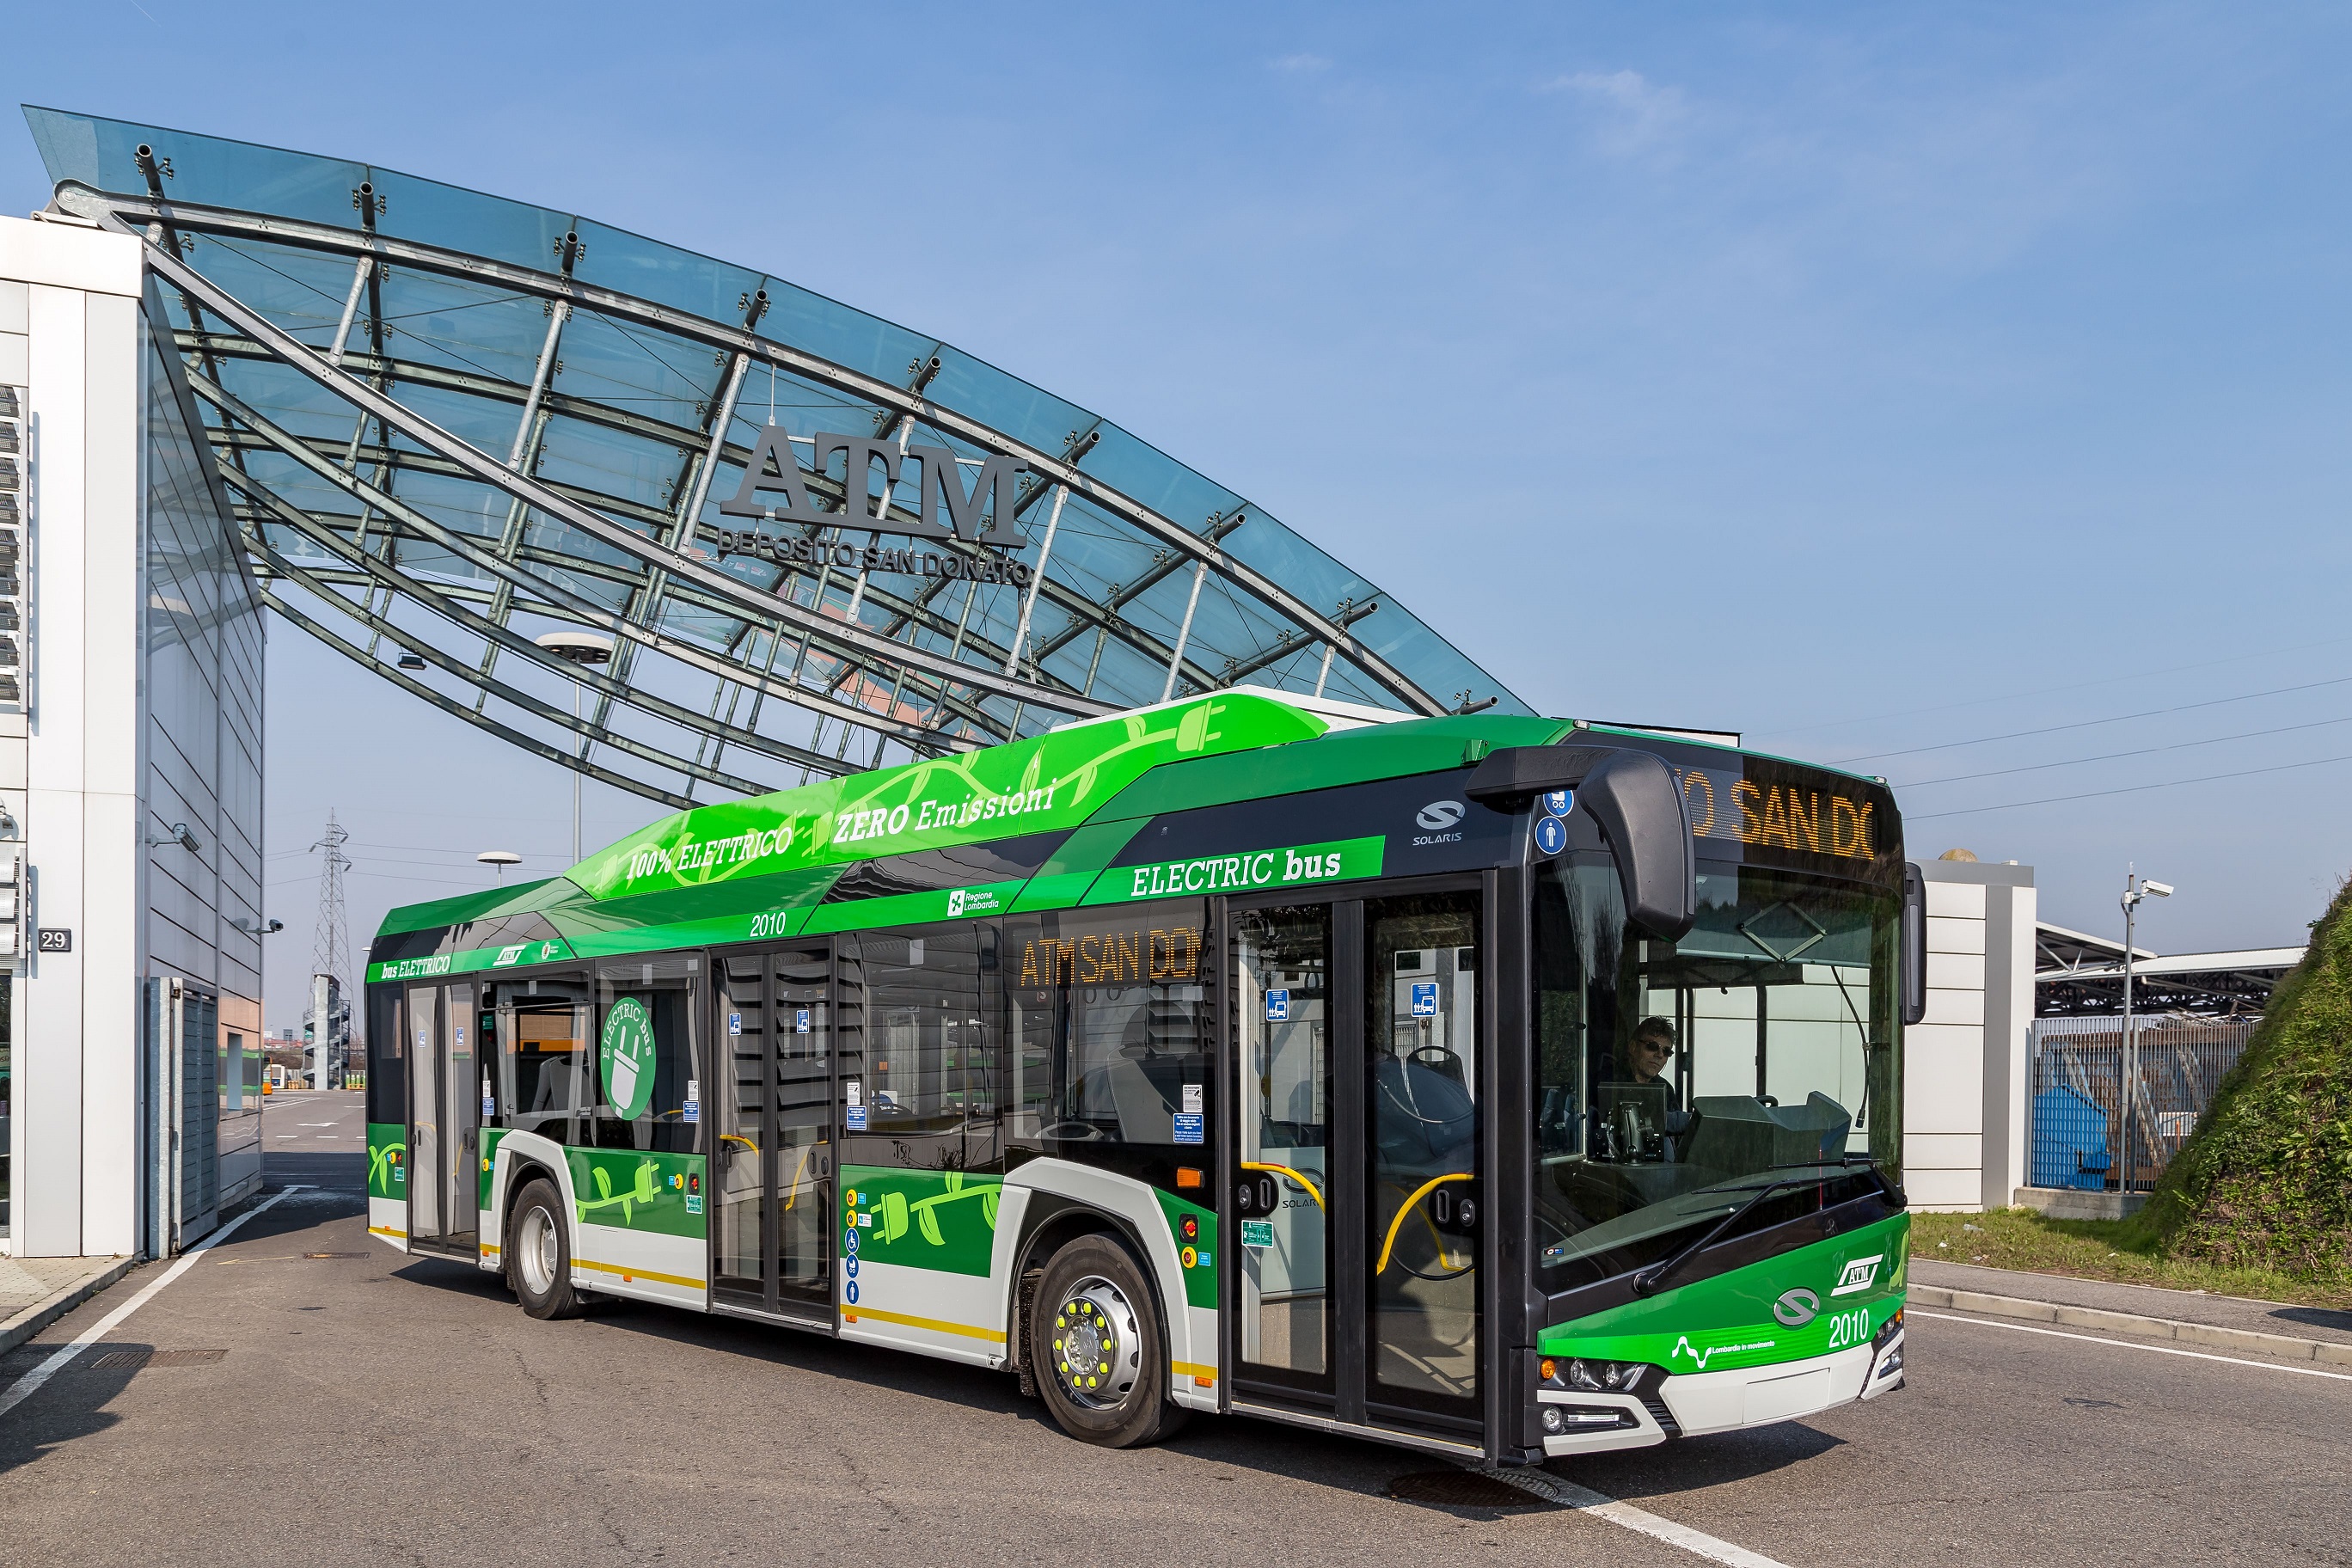 Η Solaris παρέδωσε πρόσφατα 10 ηλεκτρικά λεωφορεία στο Μιλάνο και παράλληλα δέχθηκε παραγγελία για 15 ακόμα μονάδες του Urbino Electric.